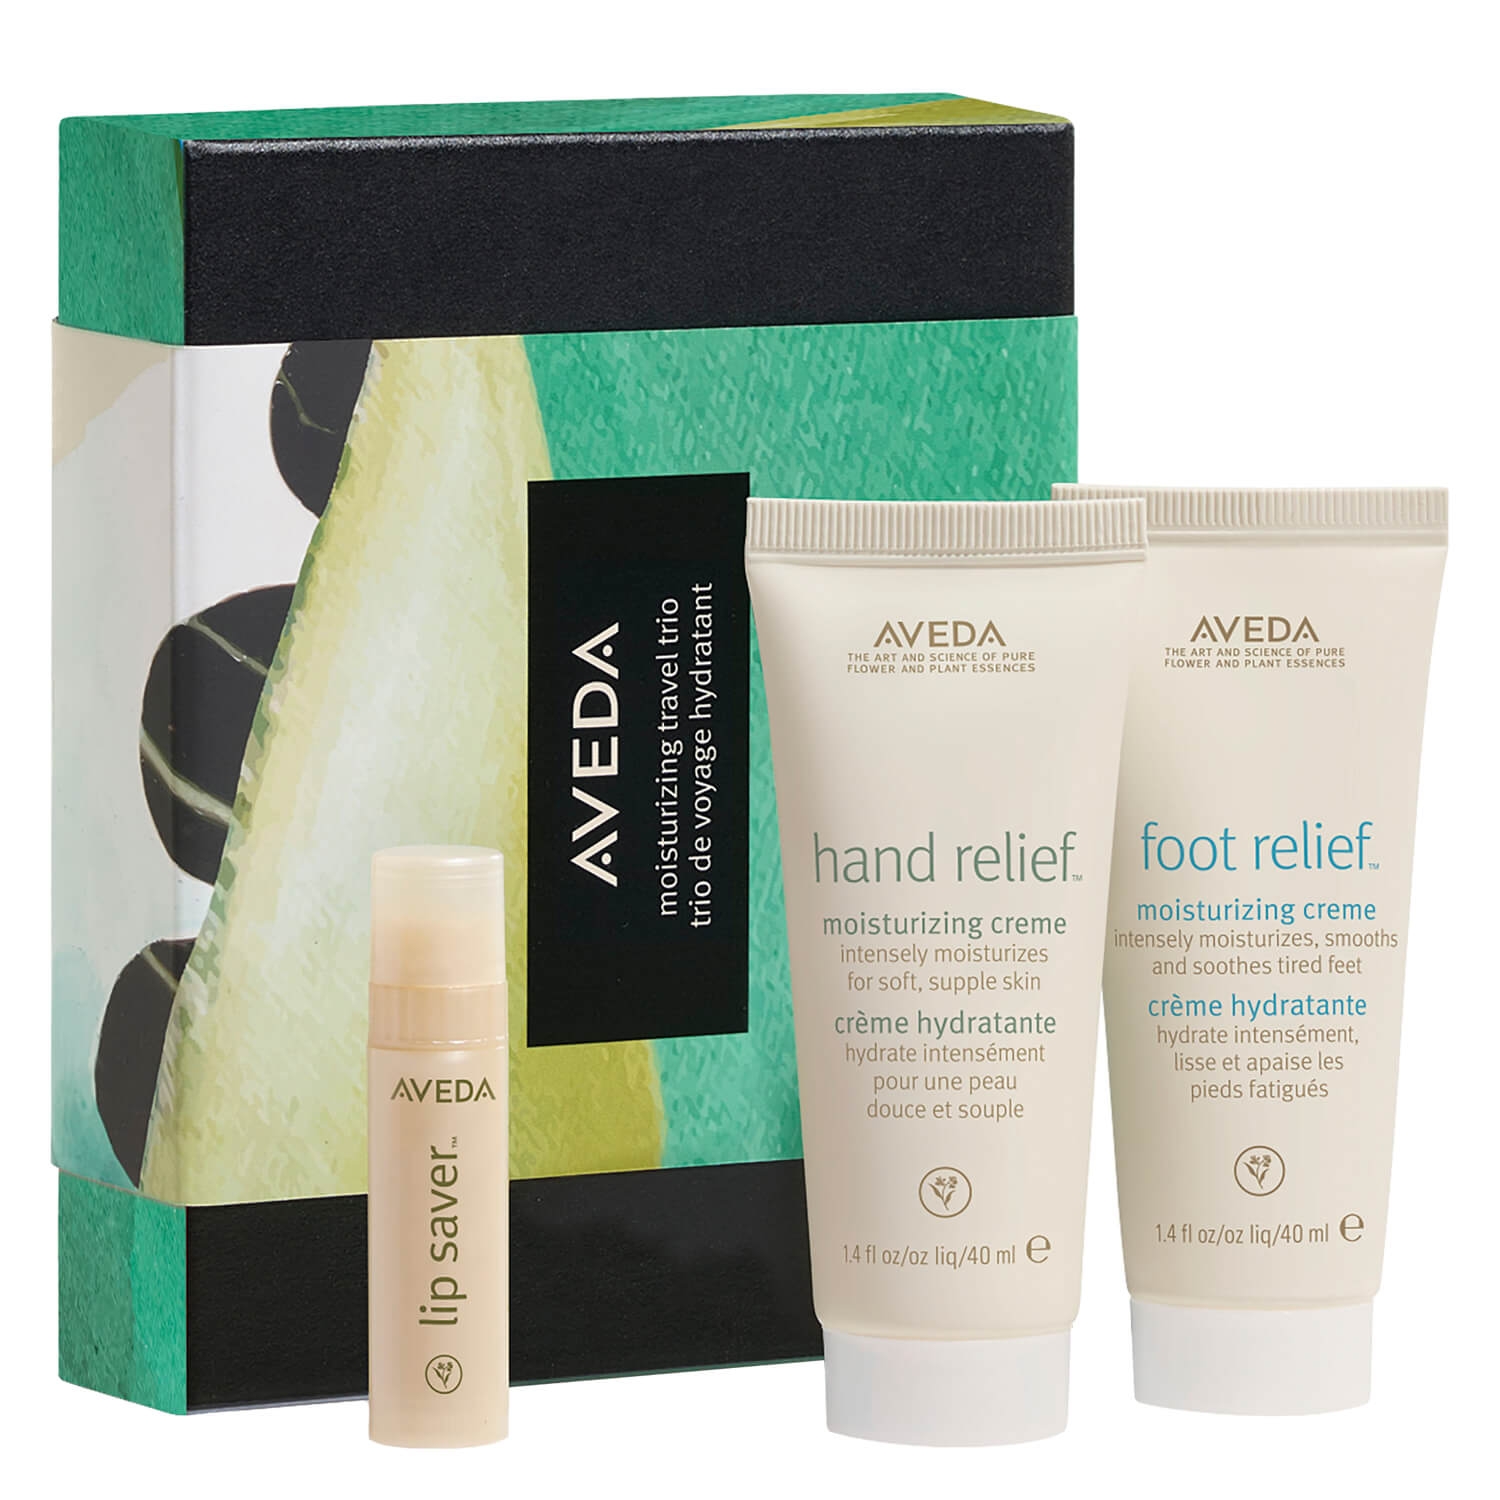 Produktbild von aveda specials - moisturizing travel trio